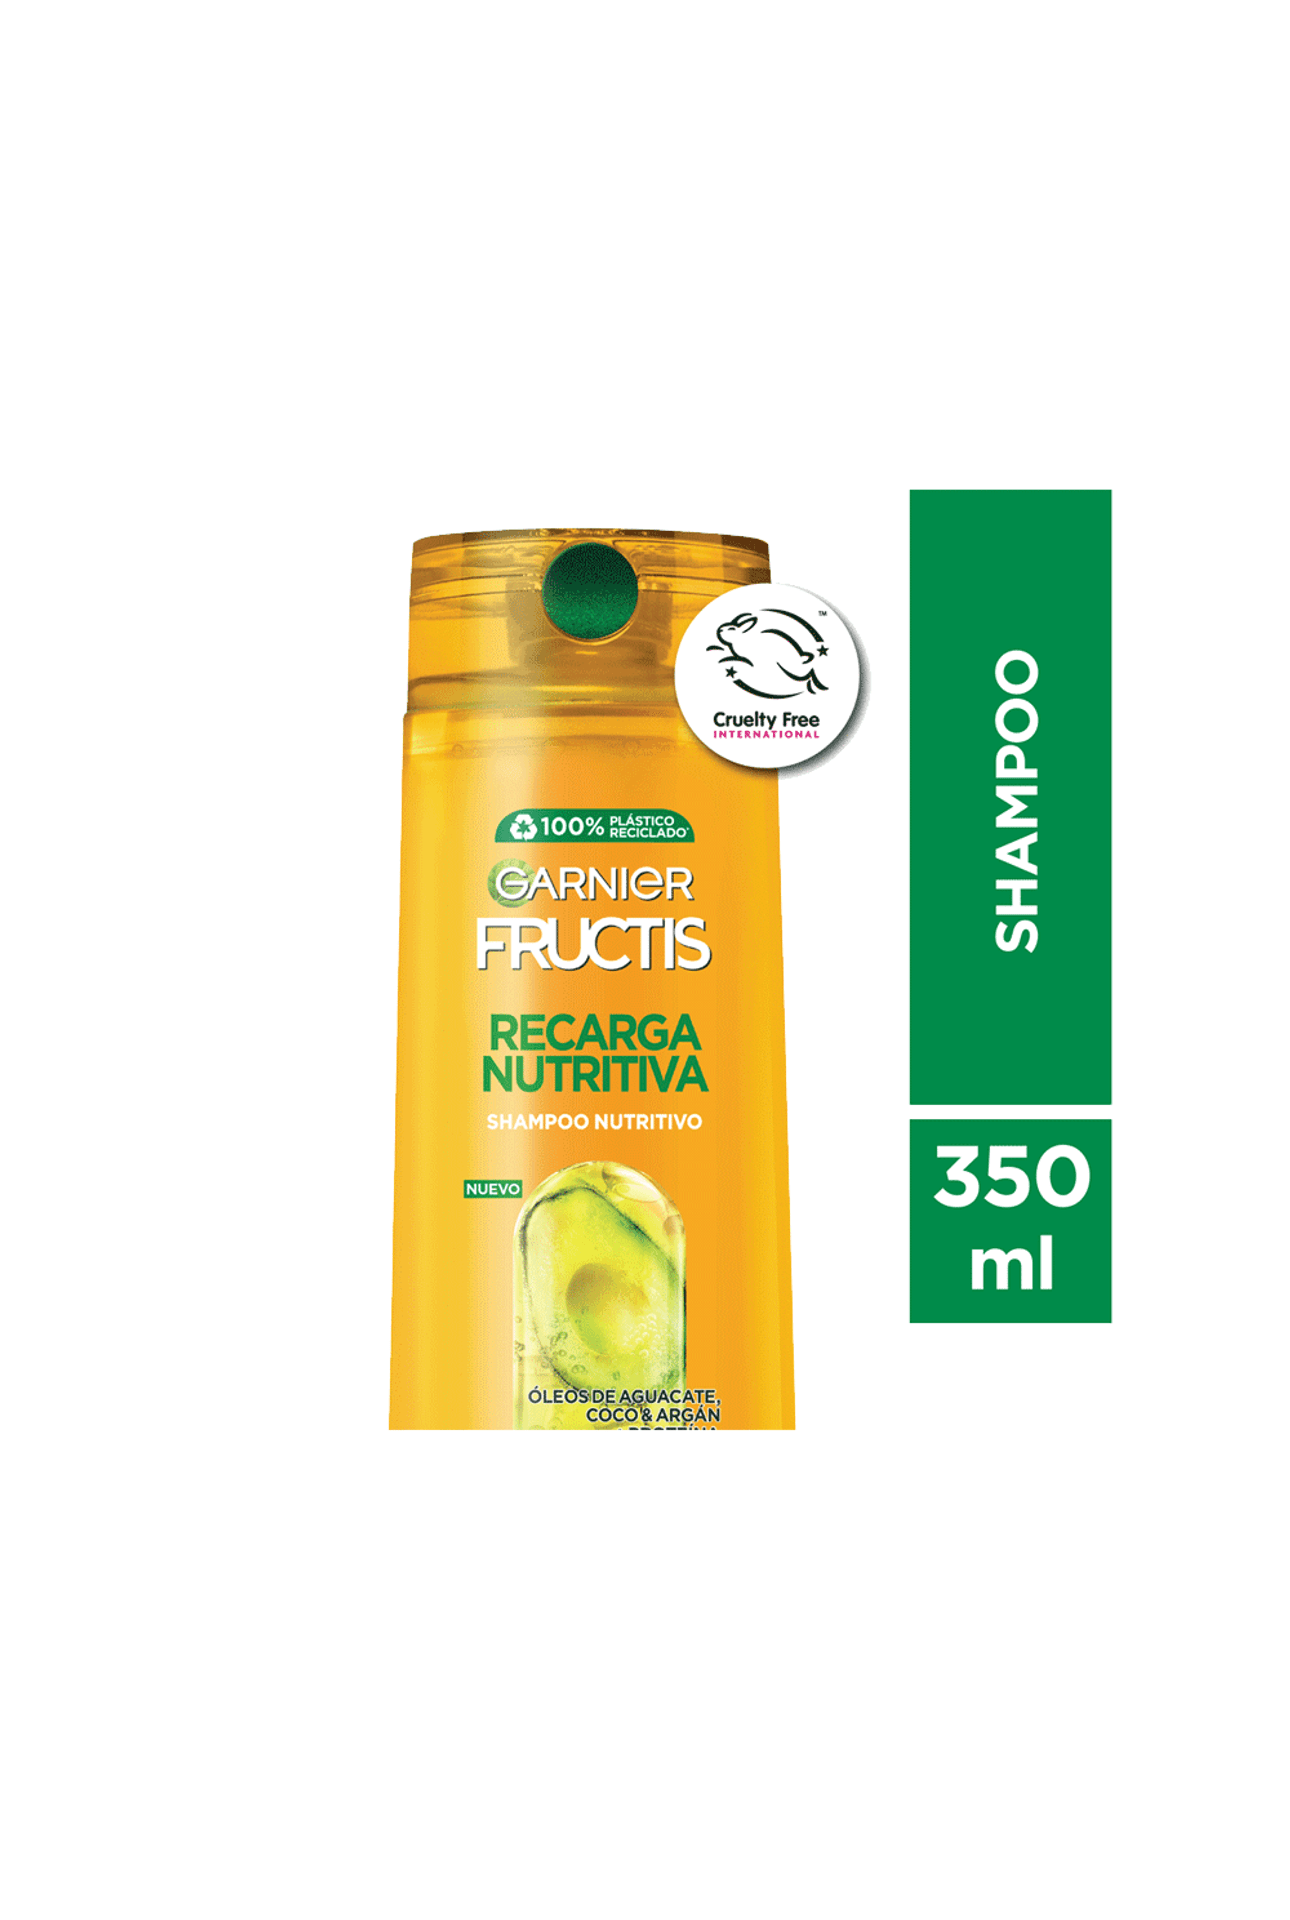 Garnier-Shampoo-Fructis-Recarga-Nutritiva-x-350-ml-7509552922271_img1